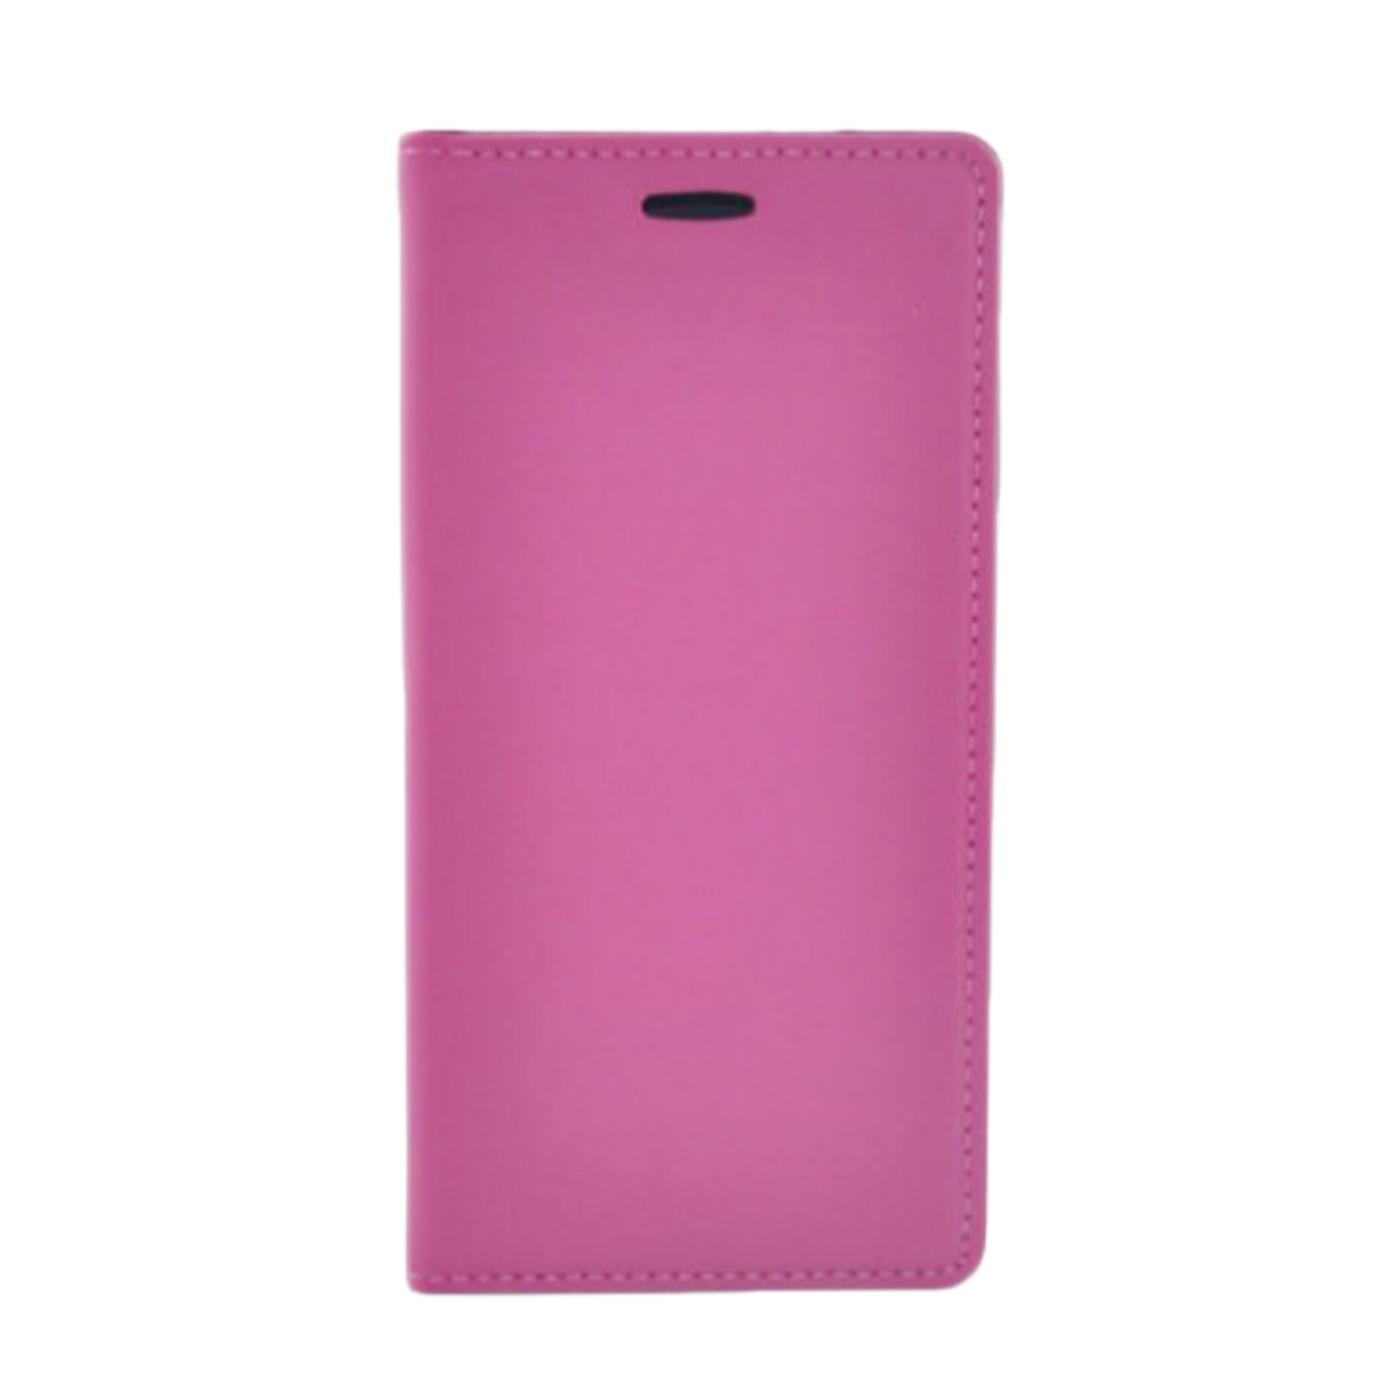 Futrola za mobitel Samsung S6 edge, pink